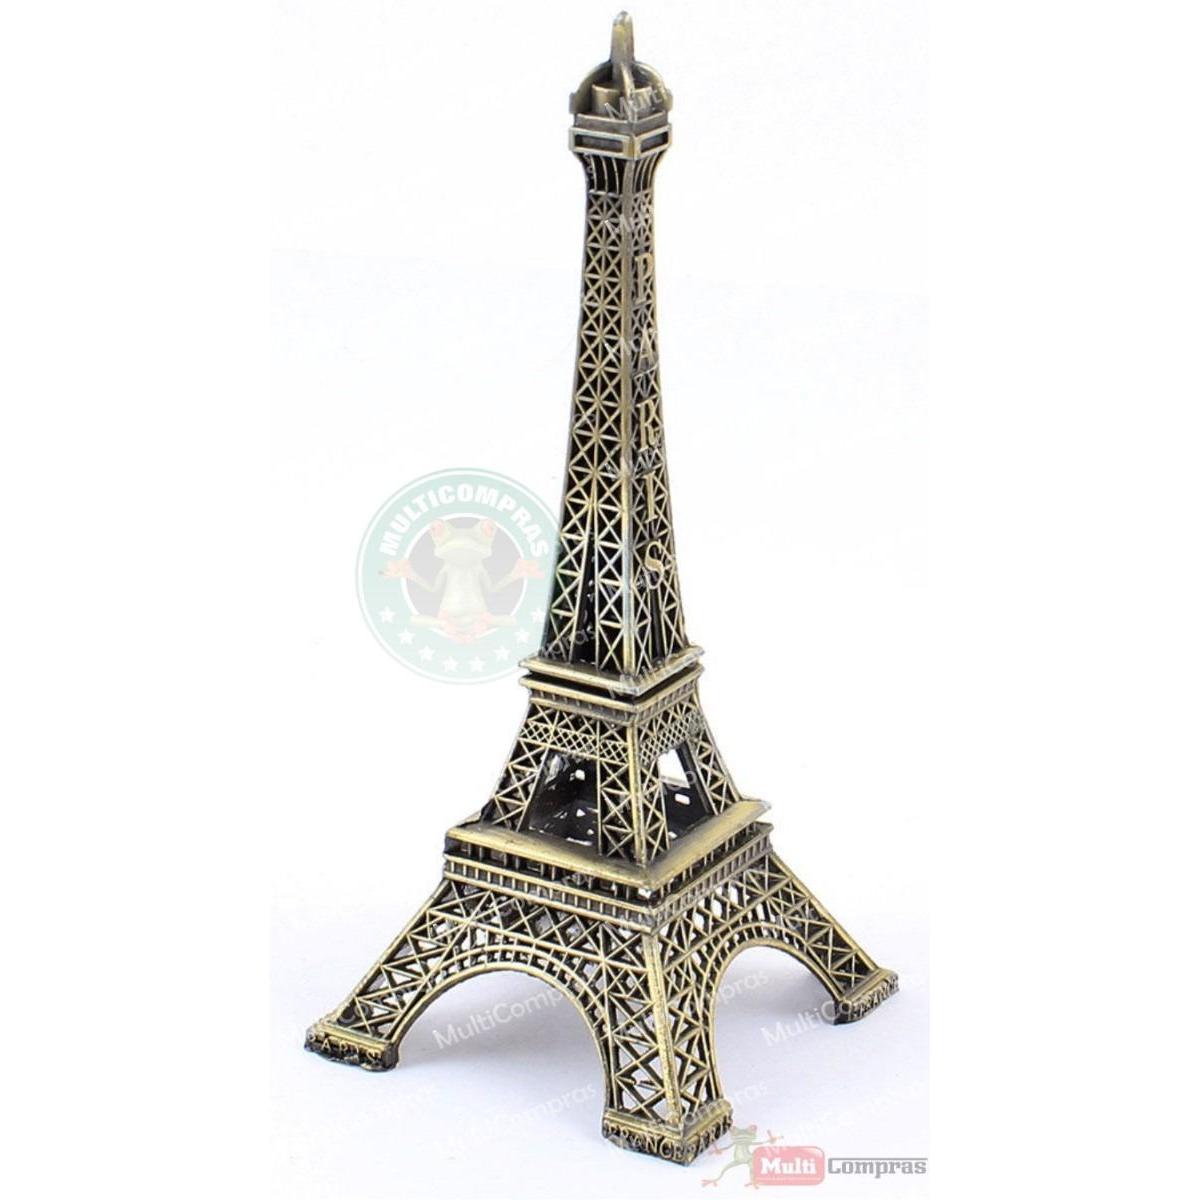  Si buscas Replica Torre Eiffel Metal 33cm Decoración Adorno Regalo puedes comprarlo con MULTI COMPRAS está en venta al mejor precio